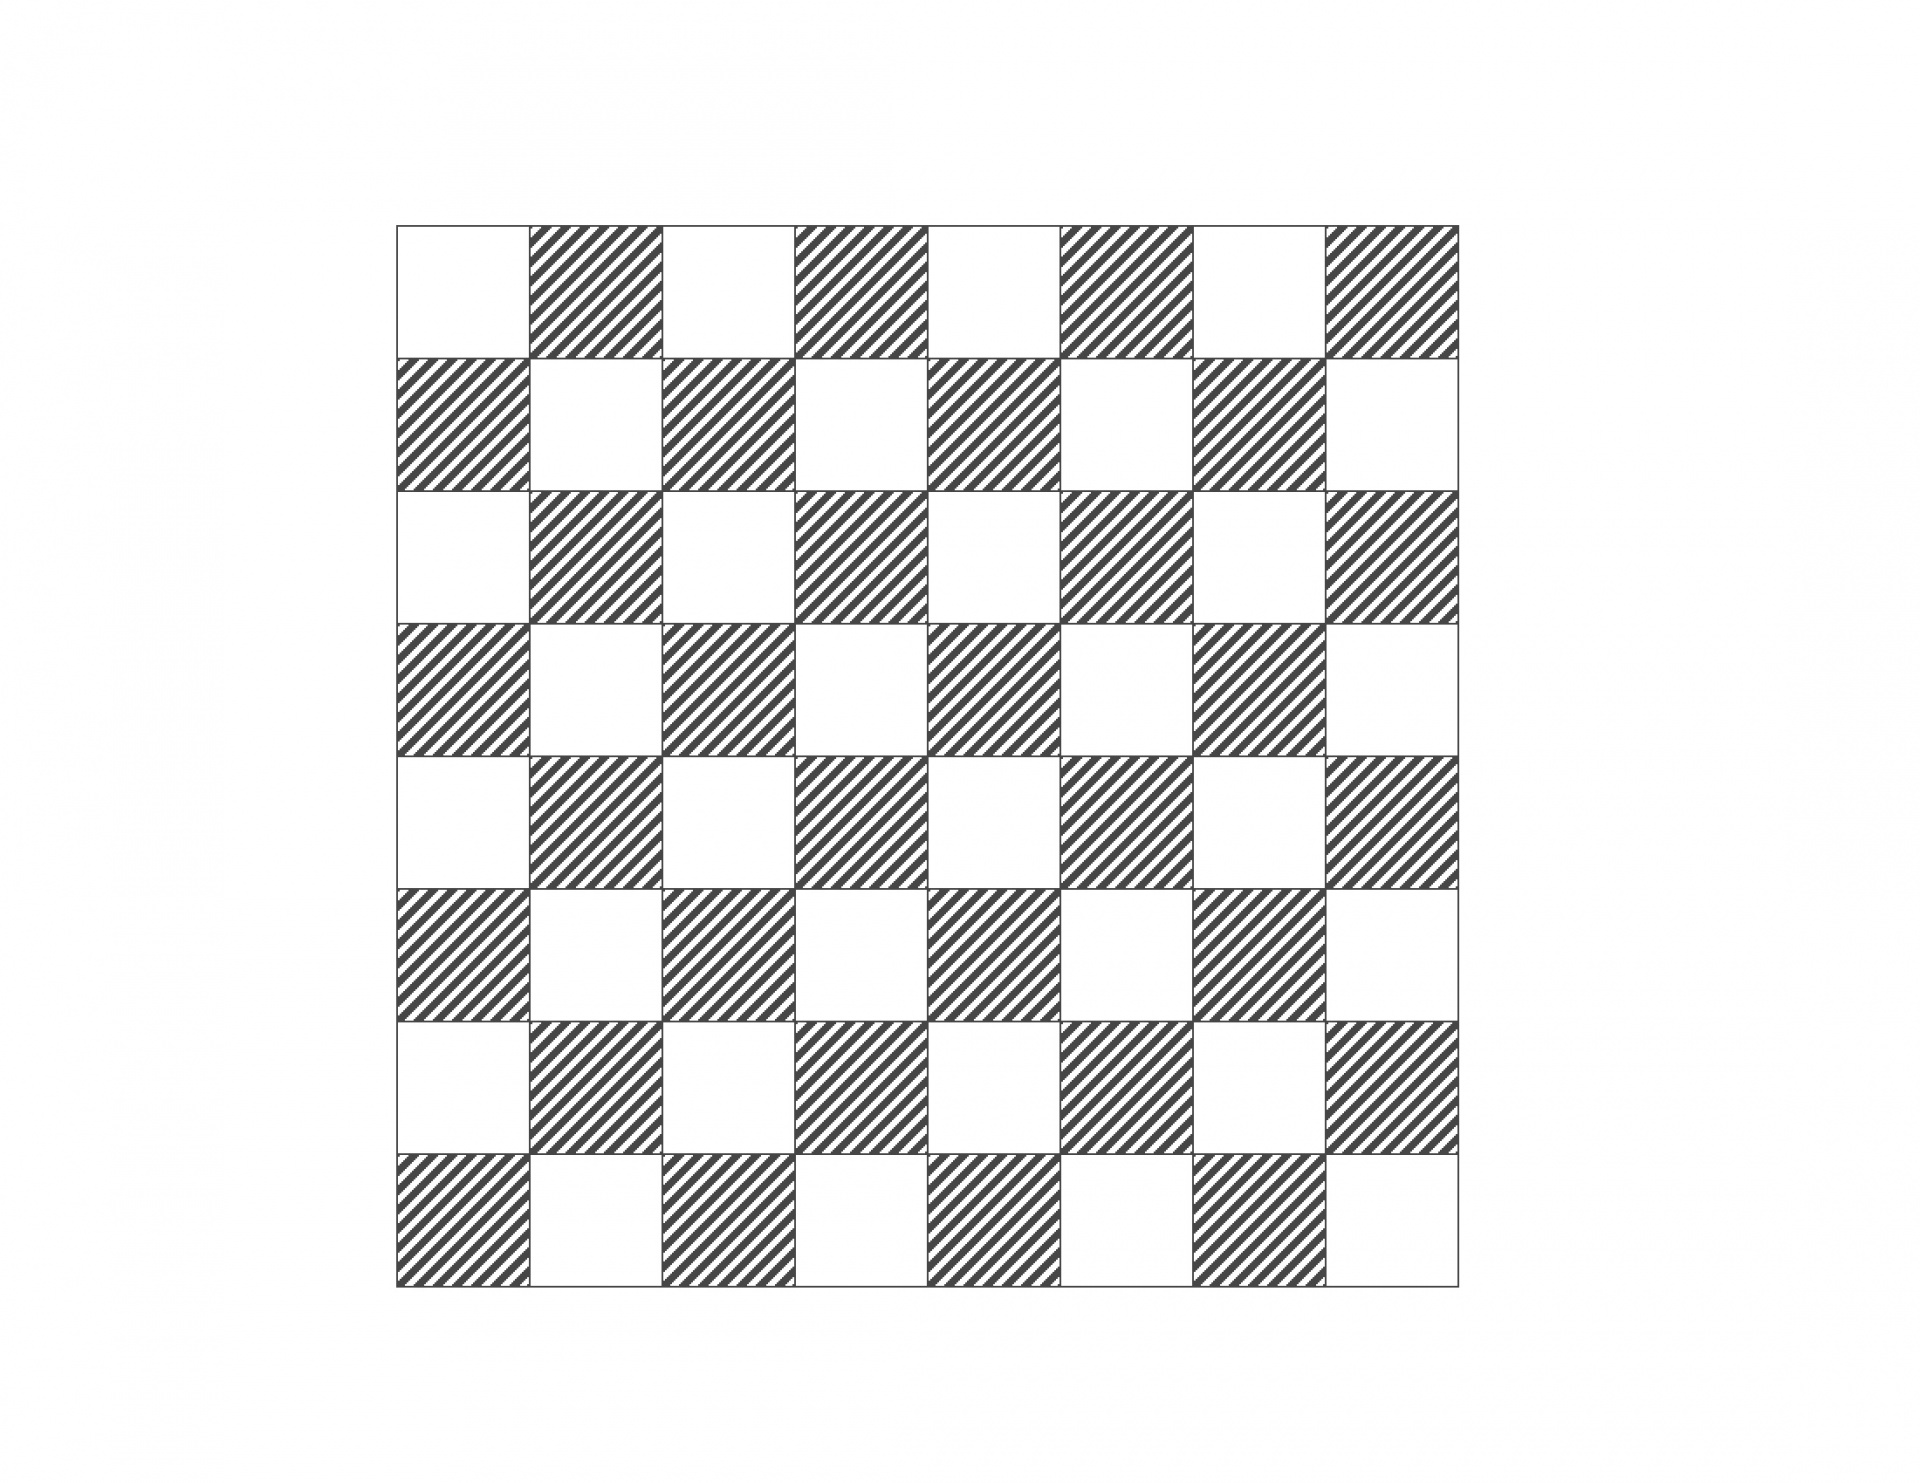 chess board empty chess board diagram chess board free photo